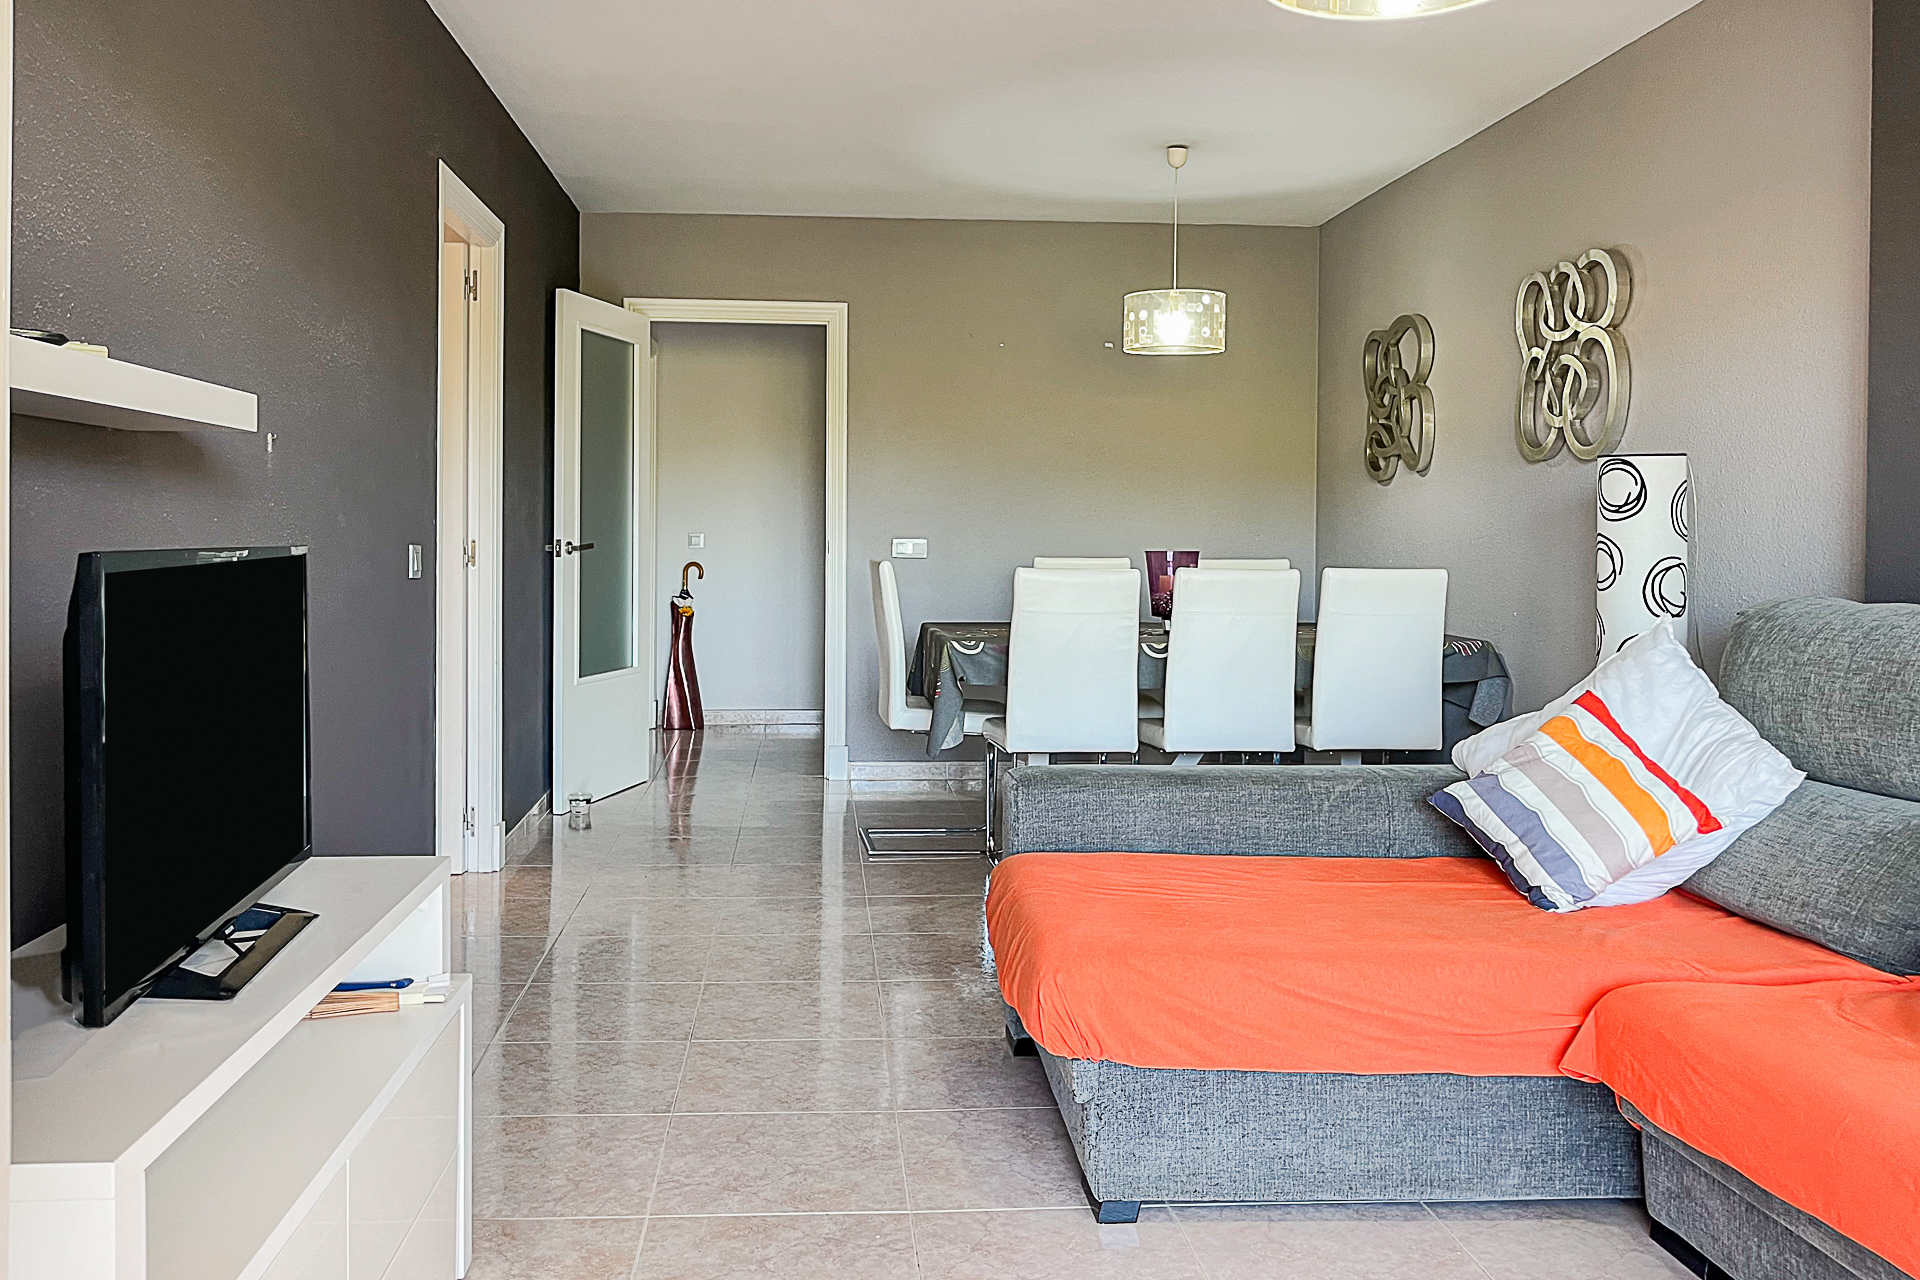 Moderno piso amueblado con 3 dormitorios y plaza de garaje subterránea, 07590 Cala Ratjada (España), Ático